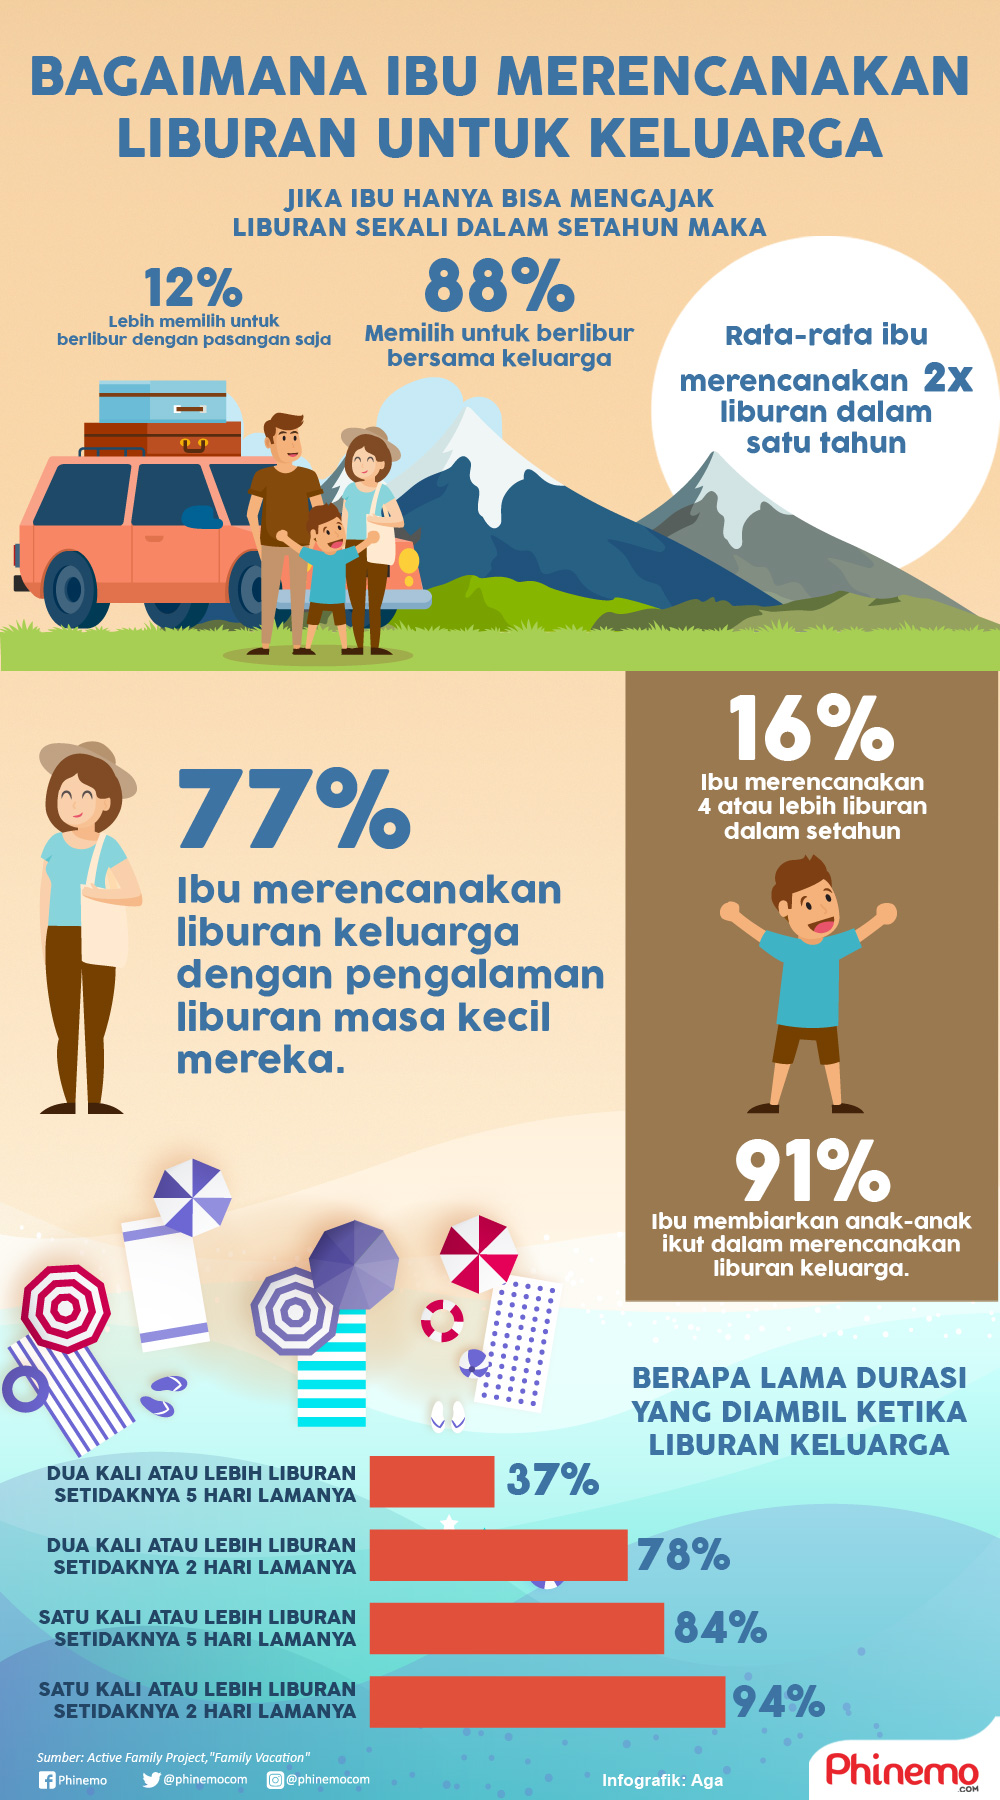 Infografik Bagaimana Ibu Merencanakan Liburan Untuk Keluarga